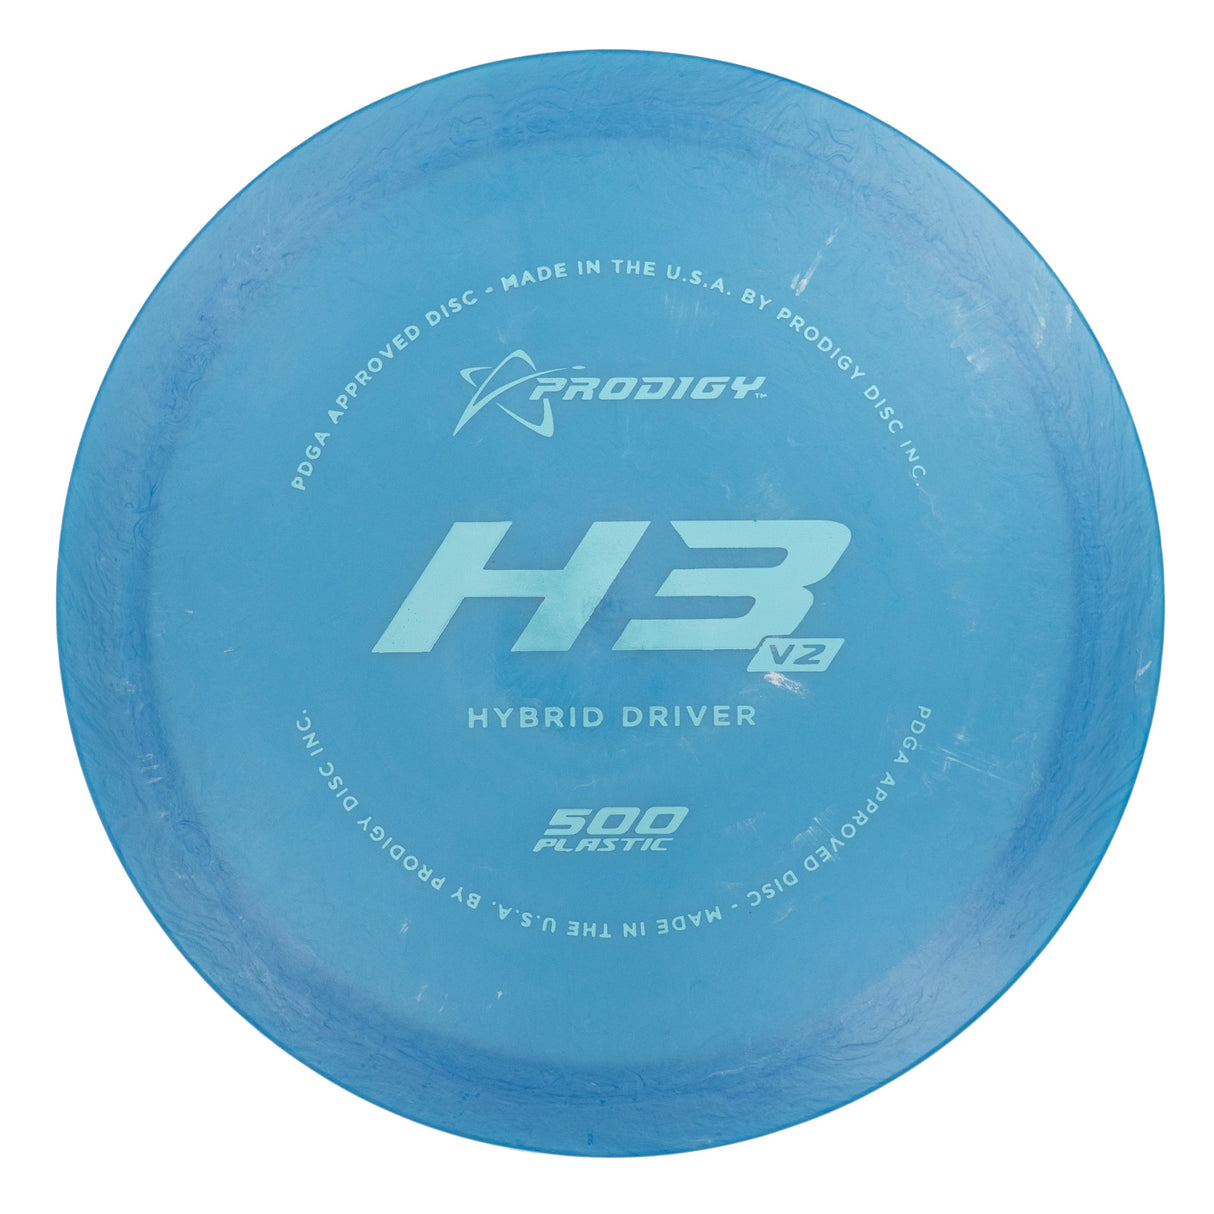 Prodigy H3 V2 - 500 172g | Style 0001